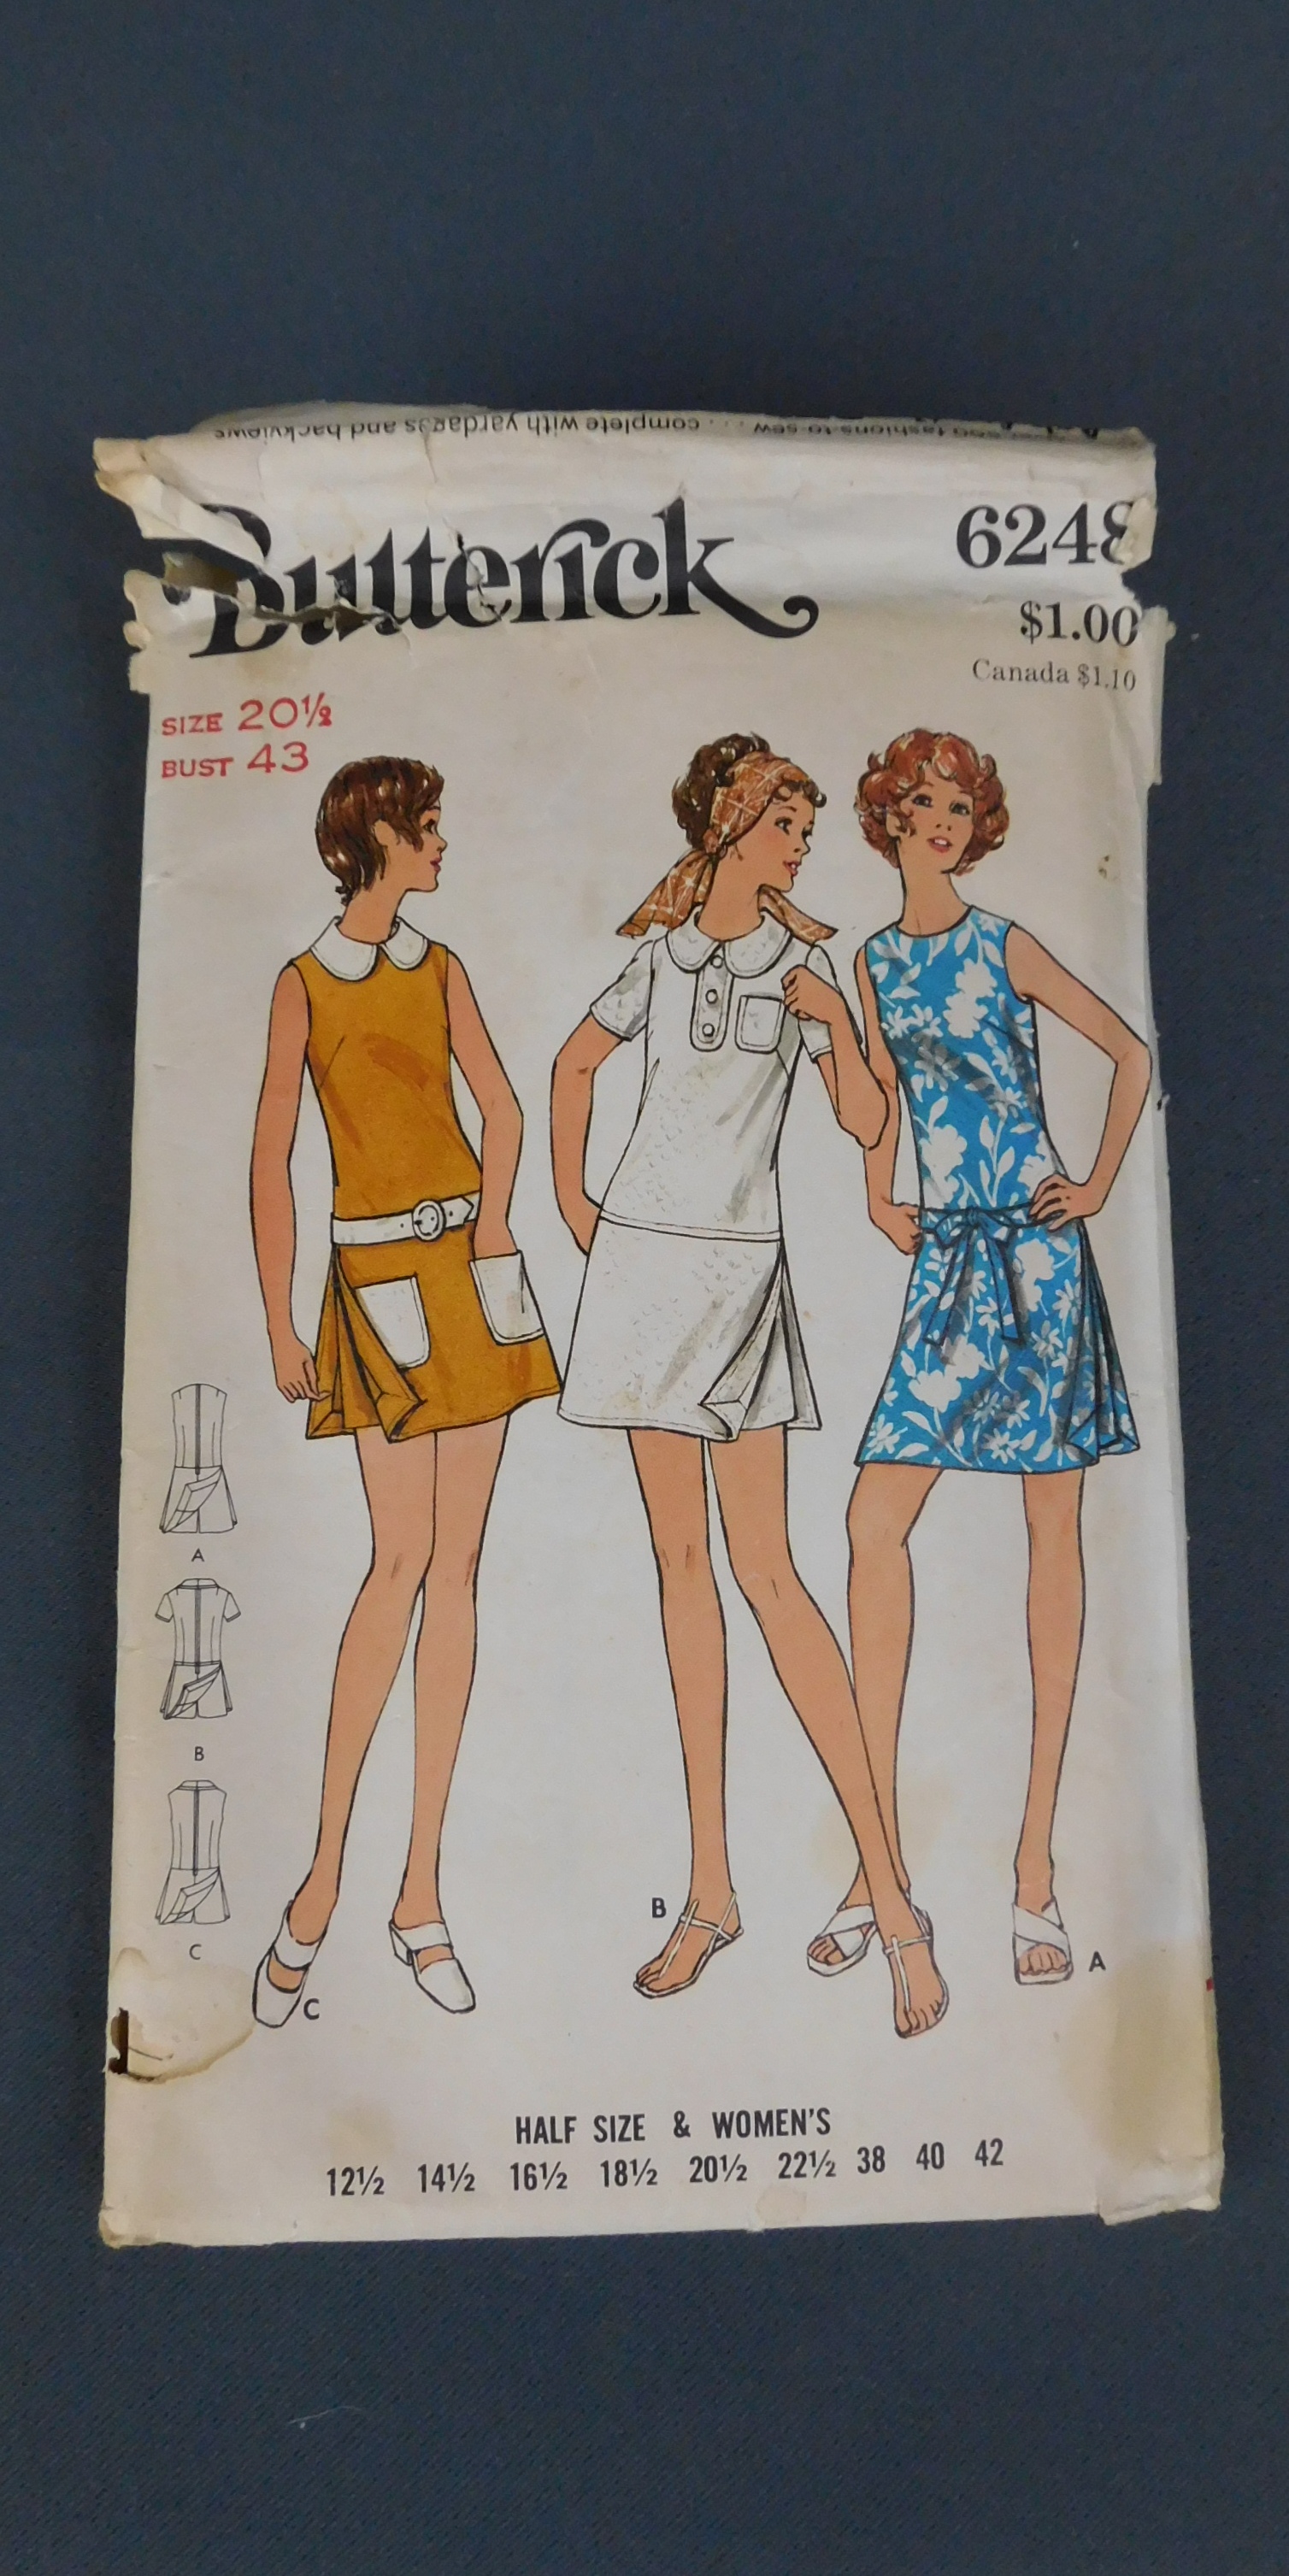 Vintage 1970s Sporty Skorts Dress Pattern, 1960s, Butterick 6248, 43 bust